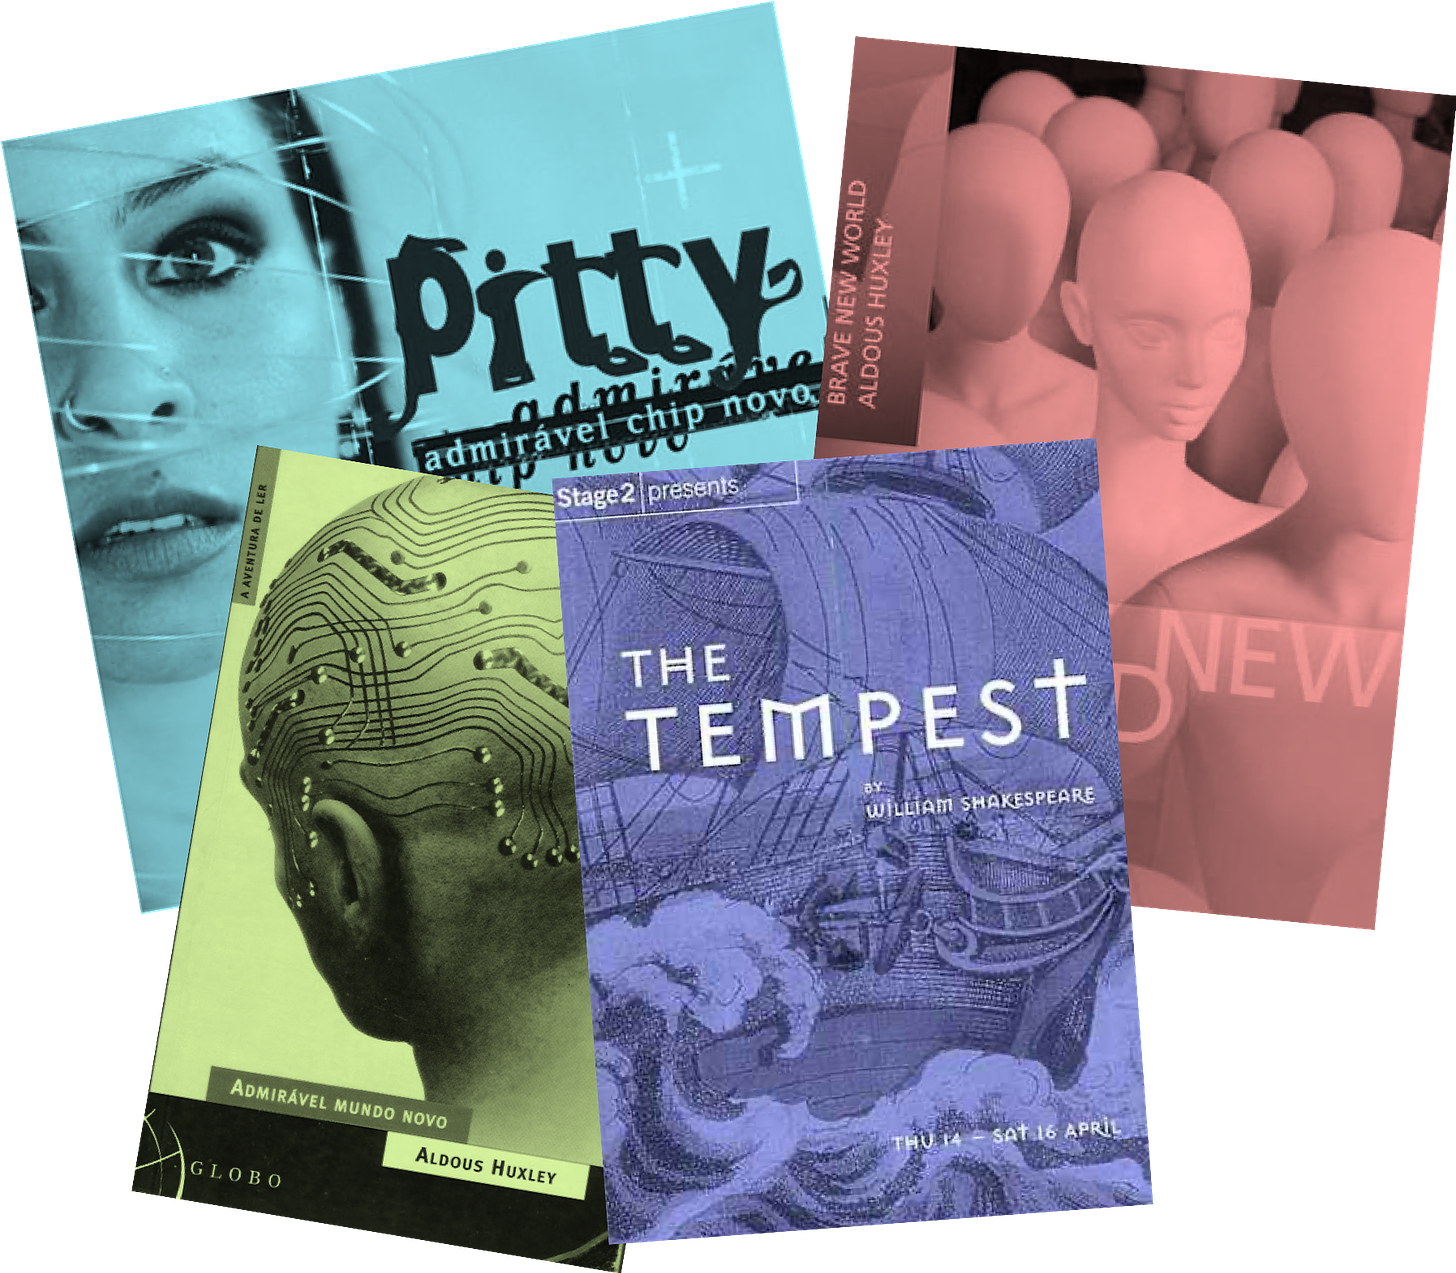 Colagem de fotos do álbum “Admirável Chip Novo”, dos livros “Brave new world” e “Admirável Mundo Novo” e da peça “The Tempest”.